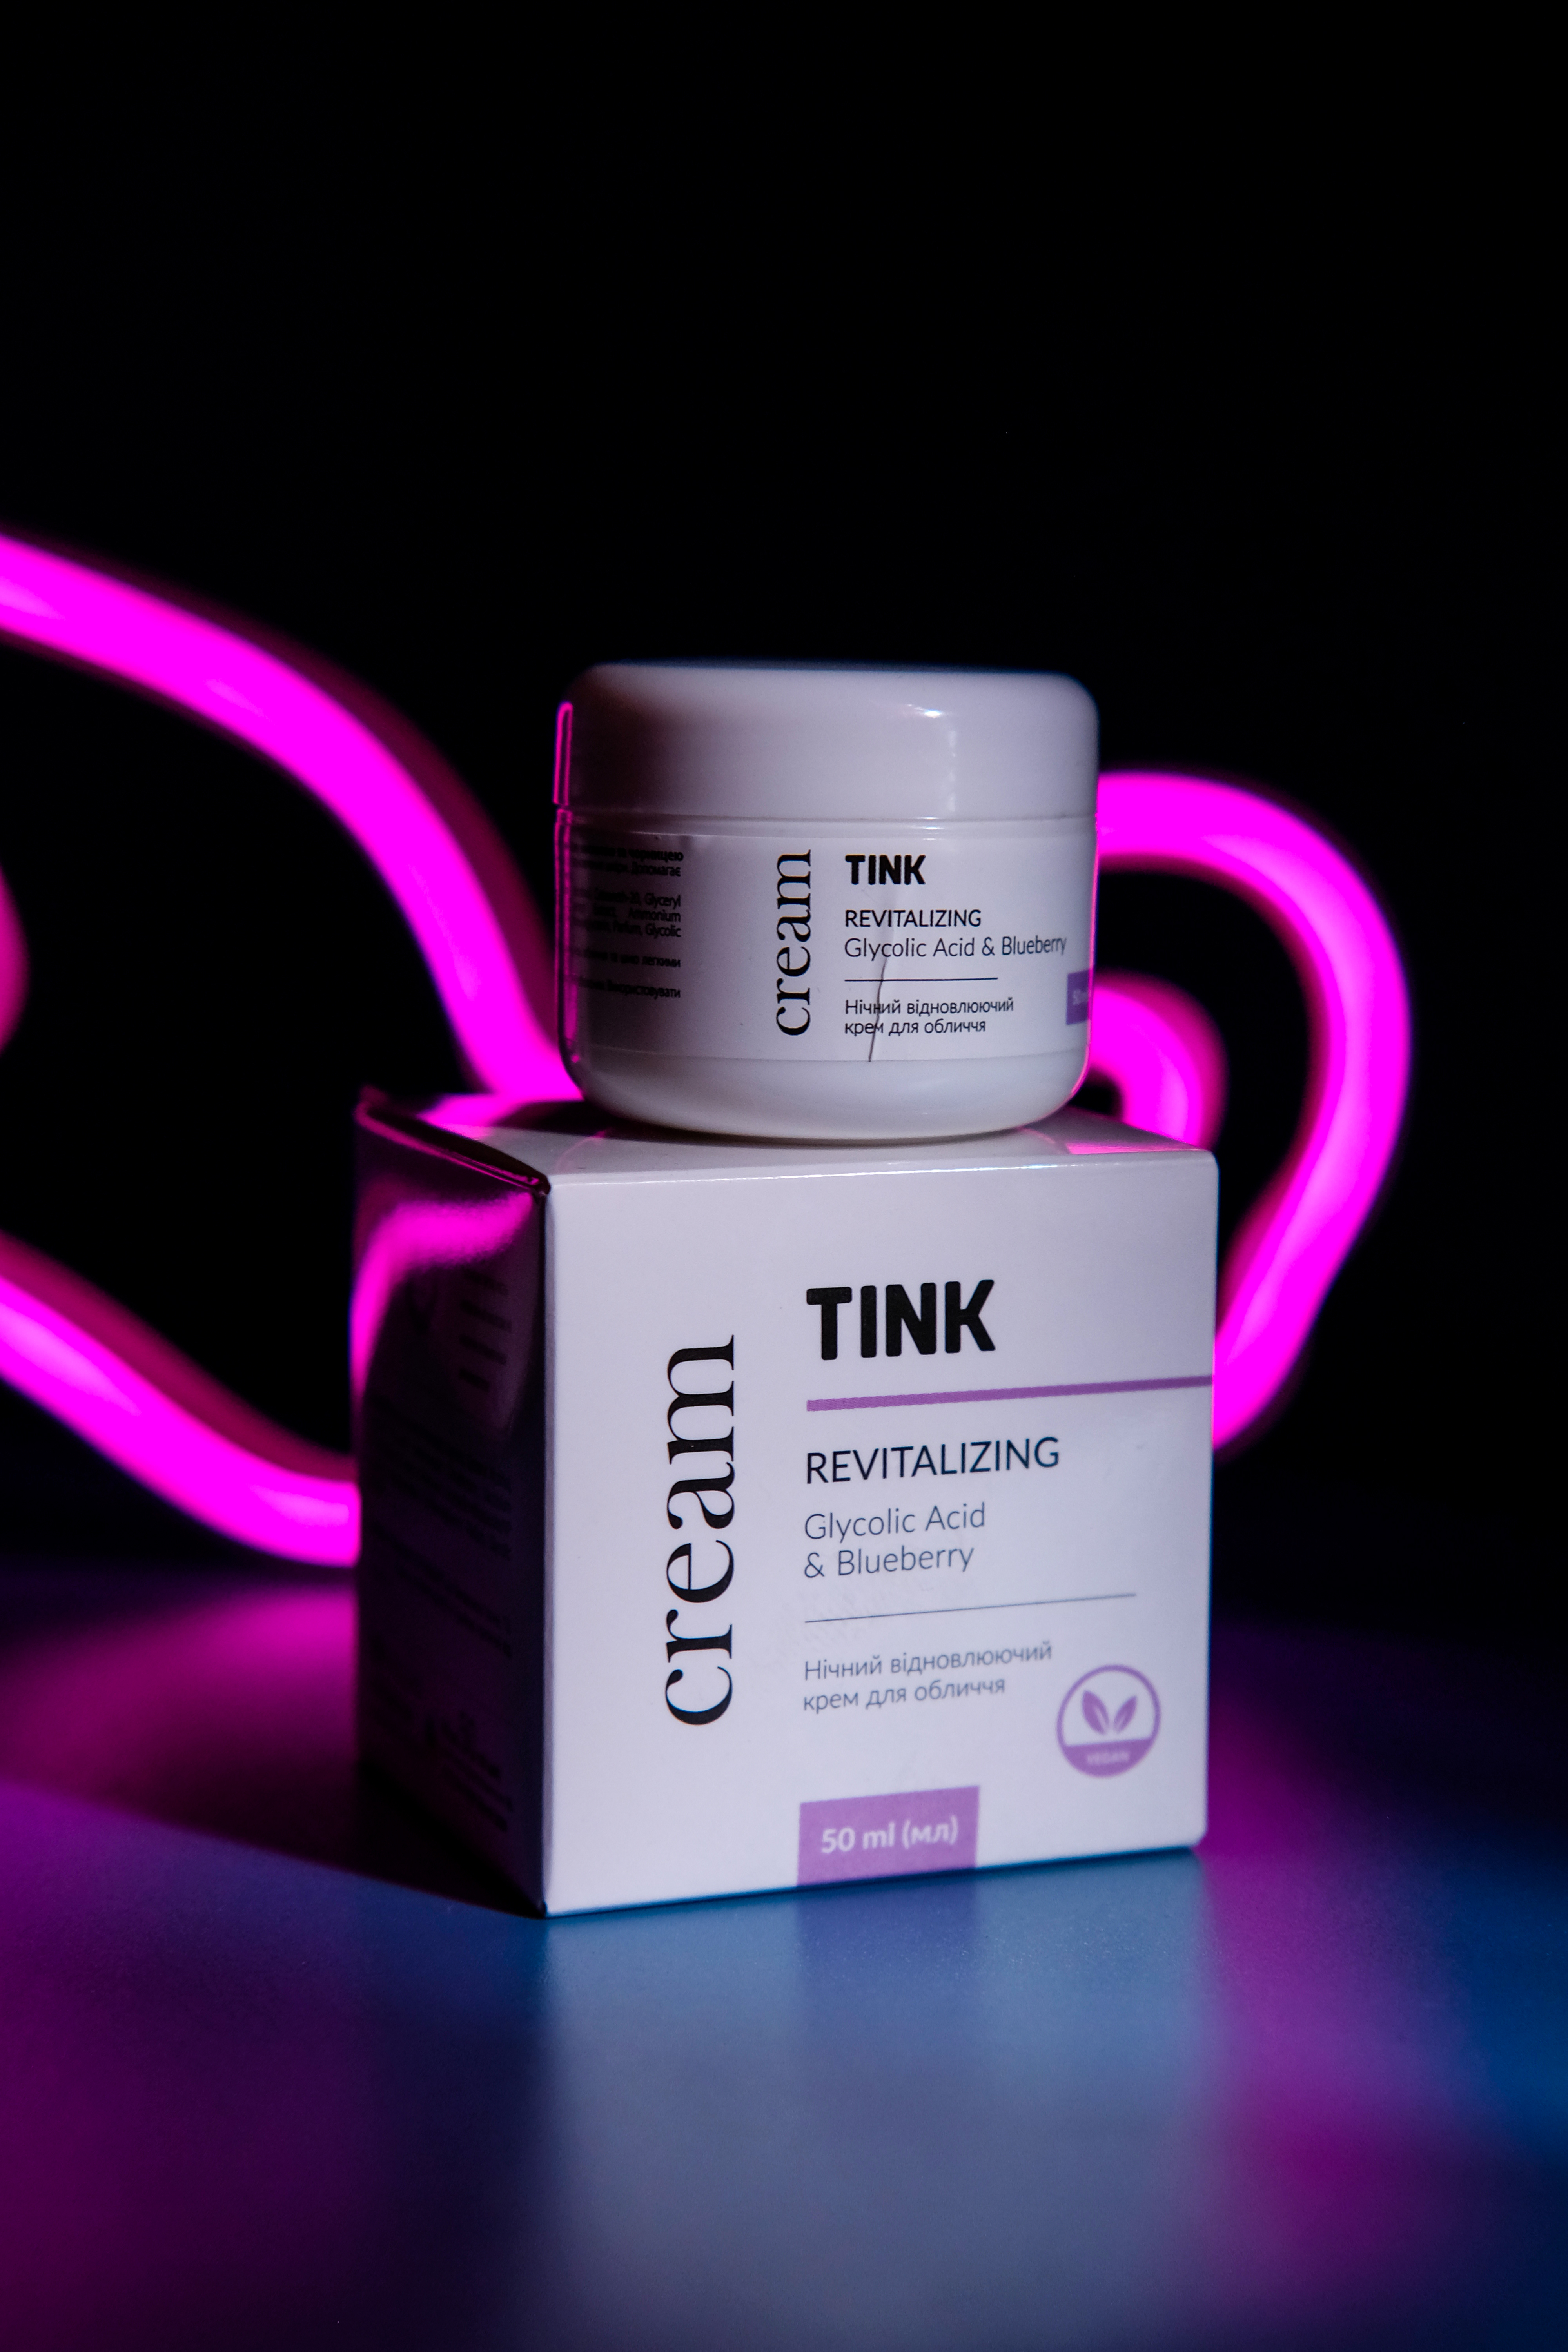 Tink Revitalizing Glycolic Acid & Blueberry Cream